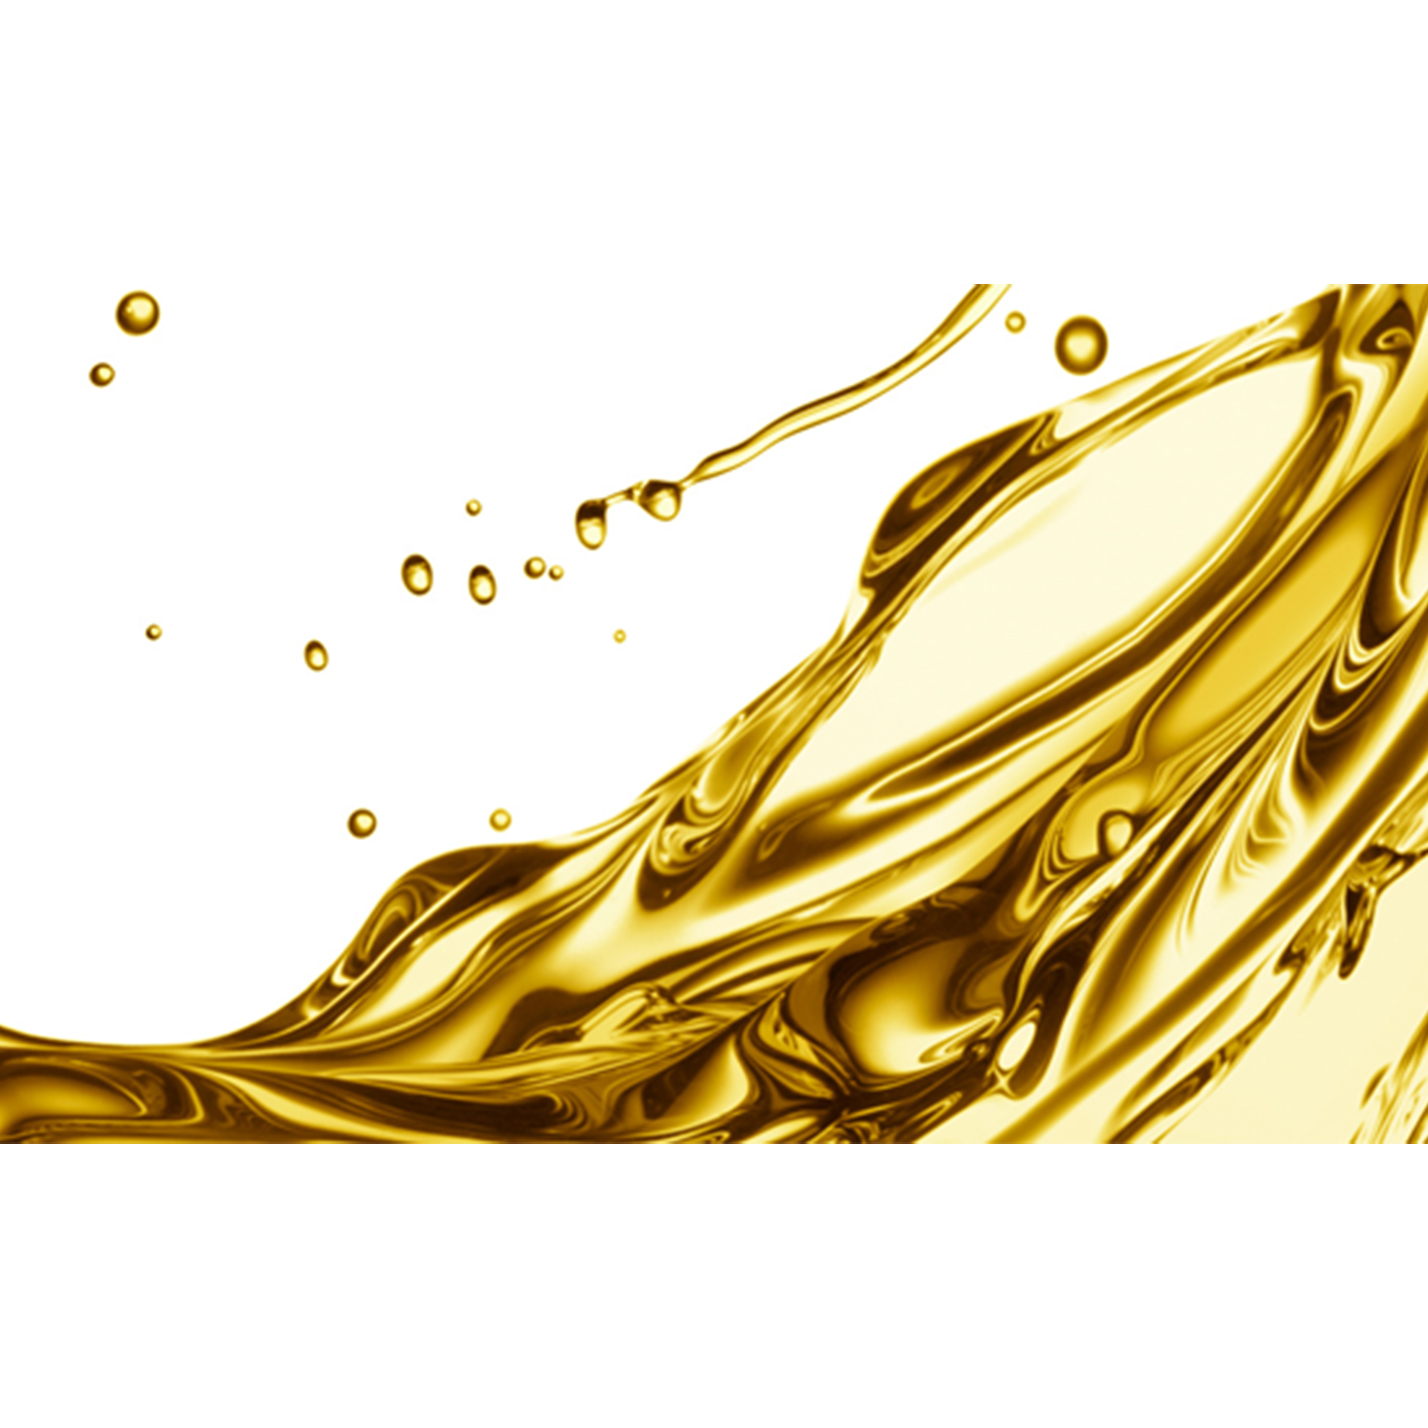 Ester base oil for refrigerating compressors